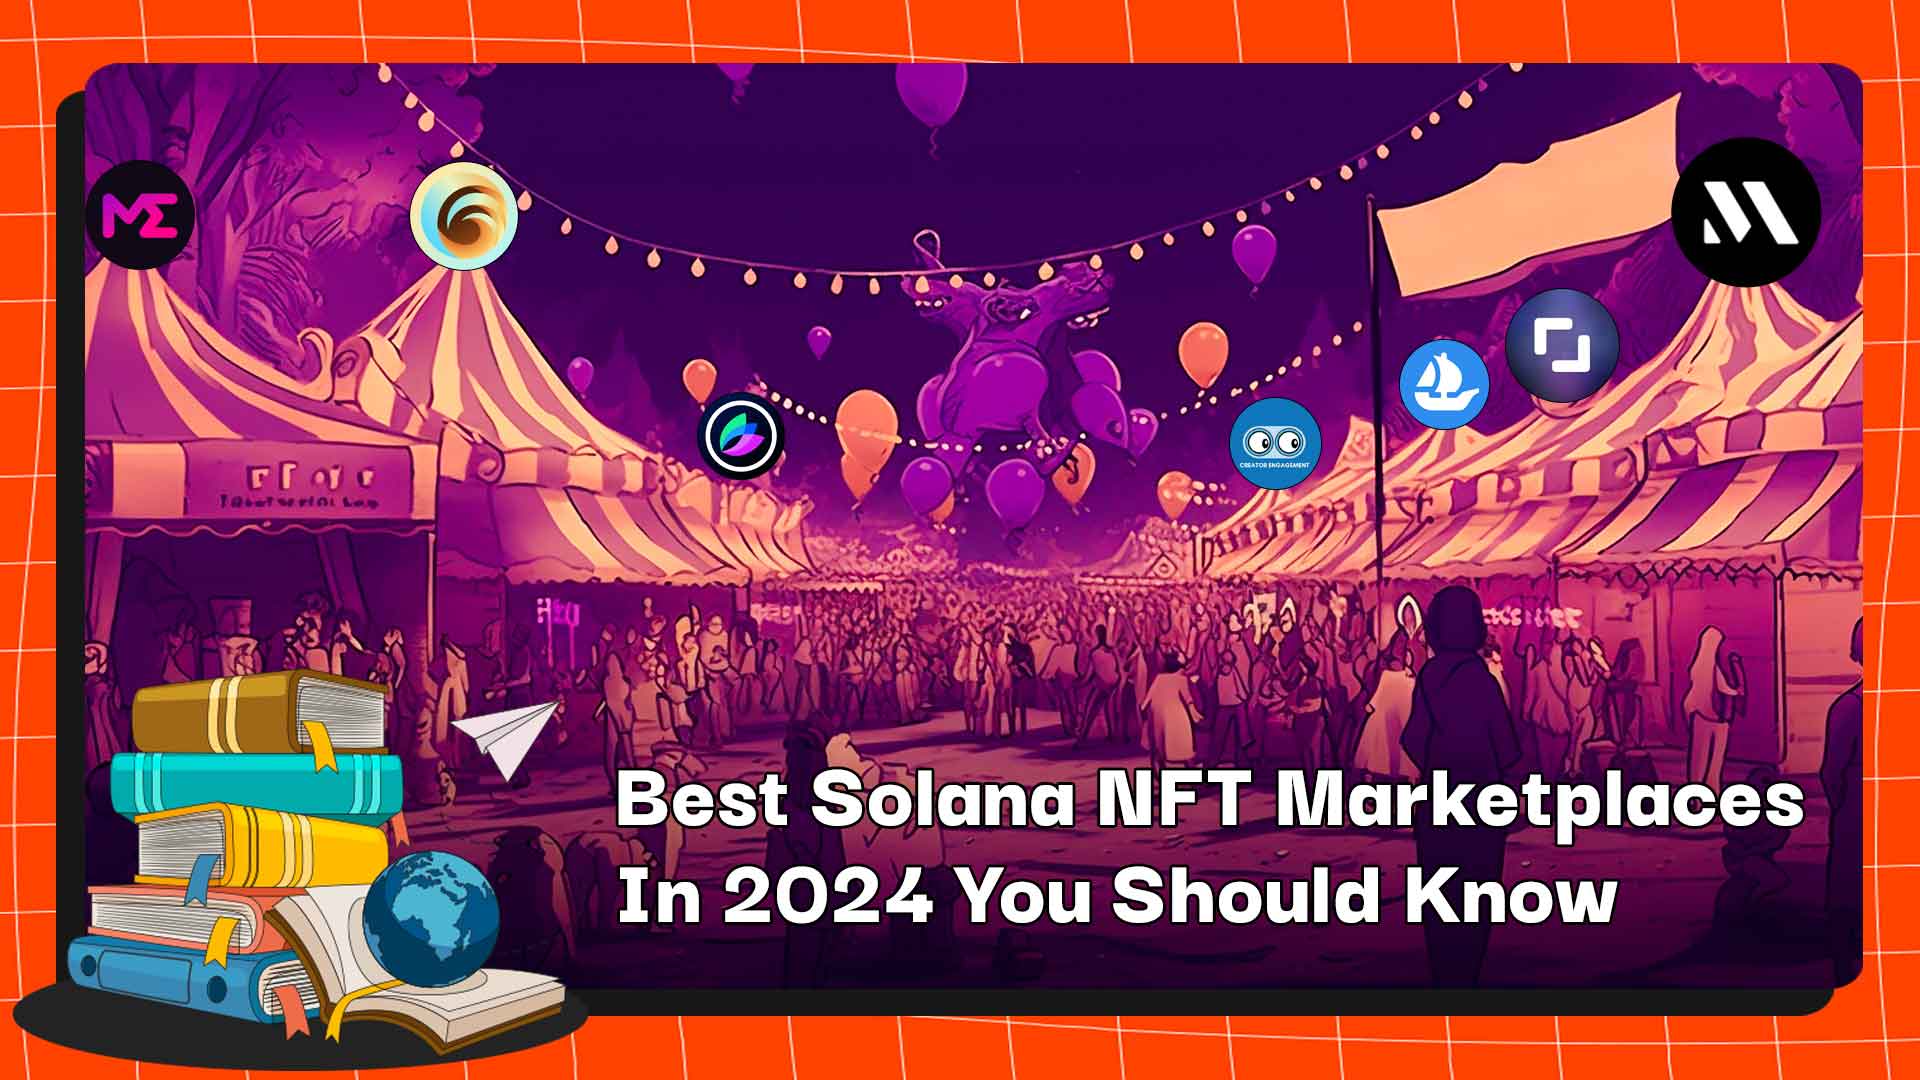 Os melhores mercados Solana NFT em 2024 que você deve conhecer